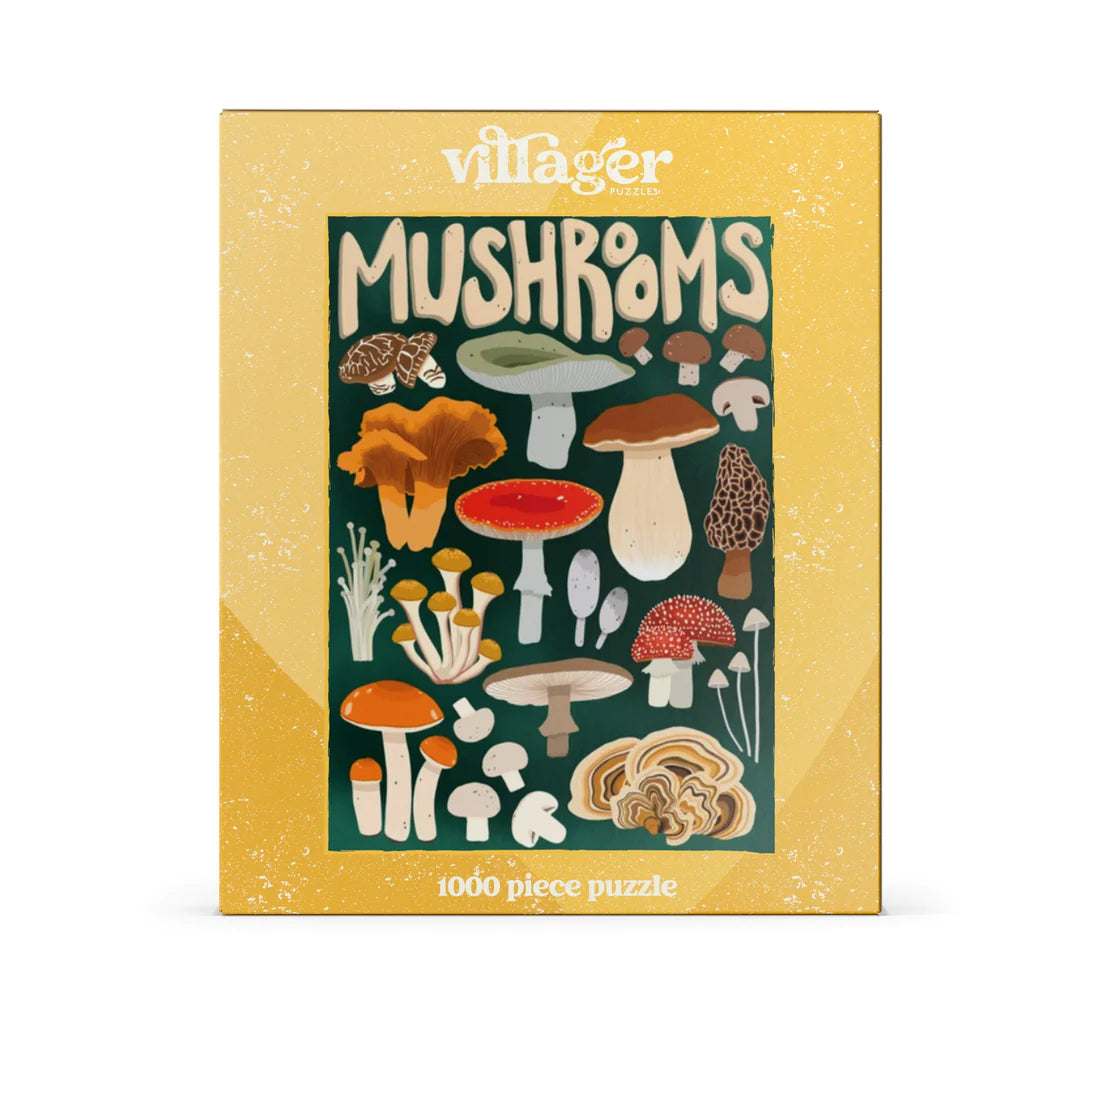 Mushroom Forager Puzzle